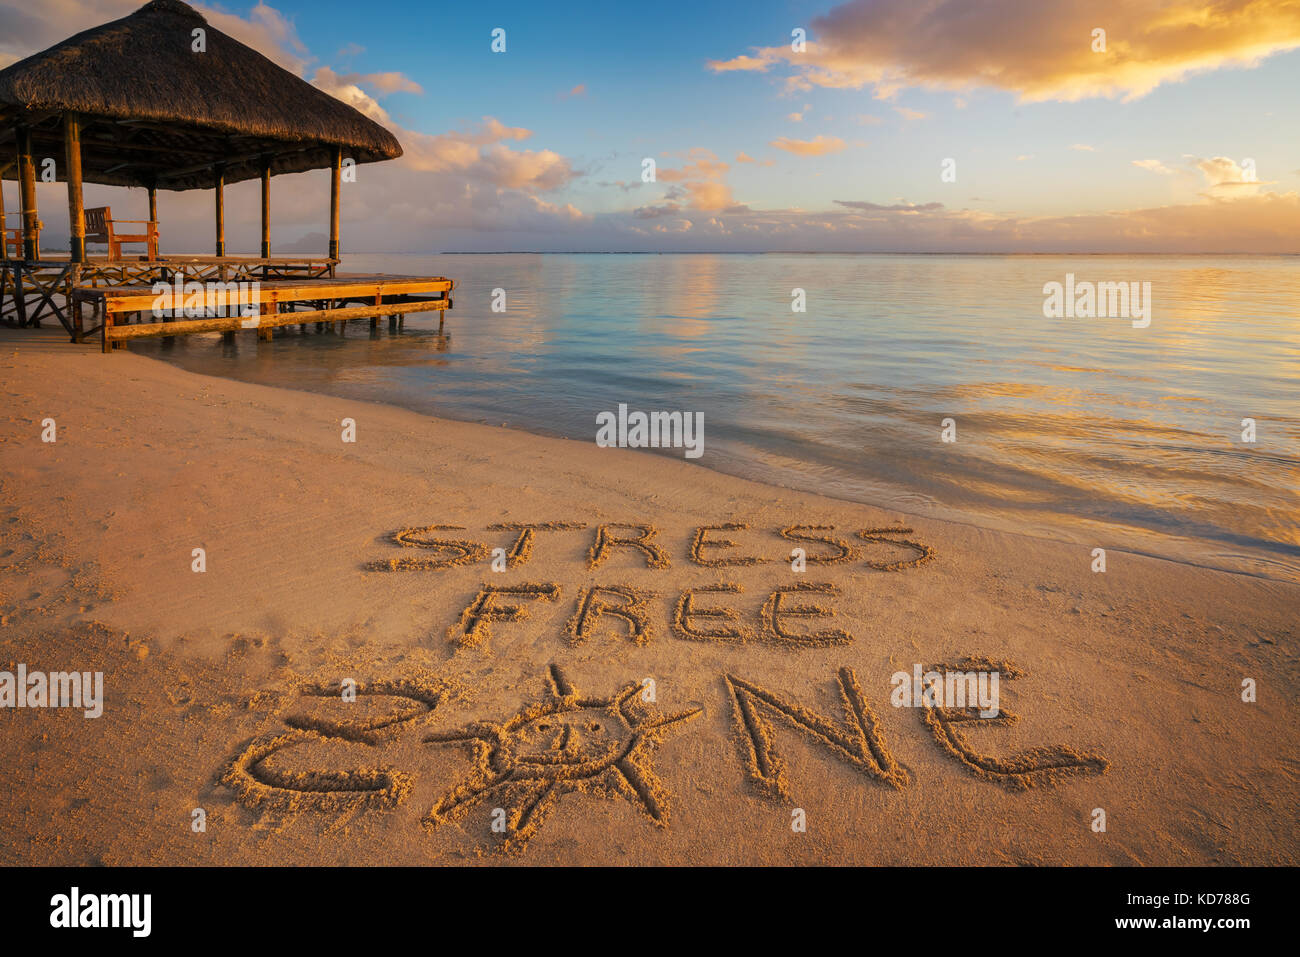 Primo piano scritto nella sabbia "stress free zone' al tramonto in isola Maurizio con pontile sul lato sinistro. Foto Stock